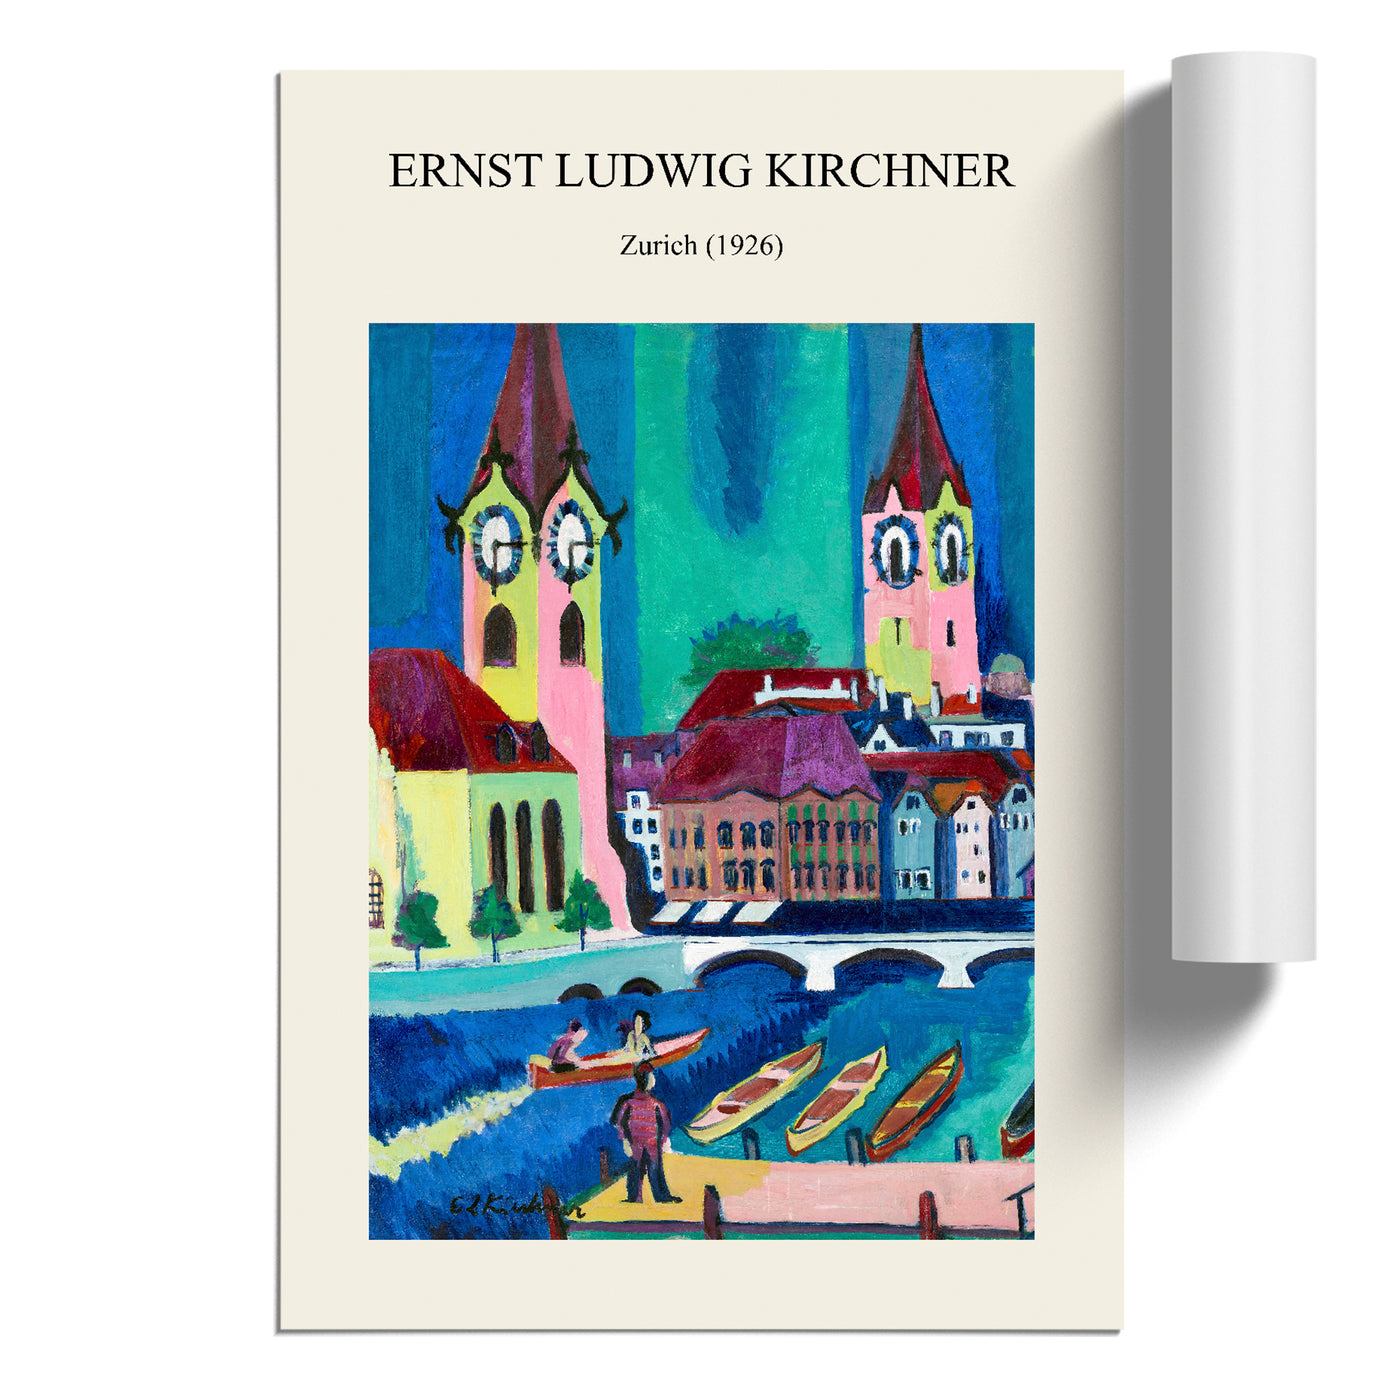 Zurich Print By Ernst Ludwig Kirchner